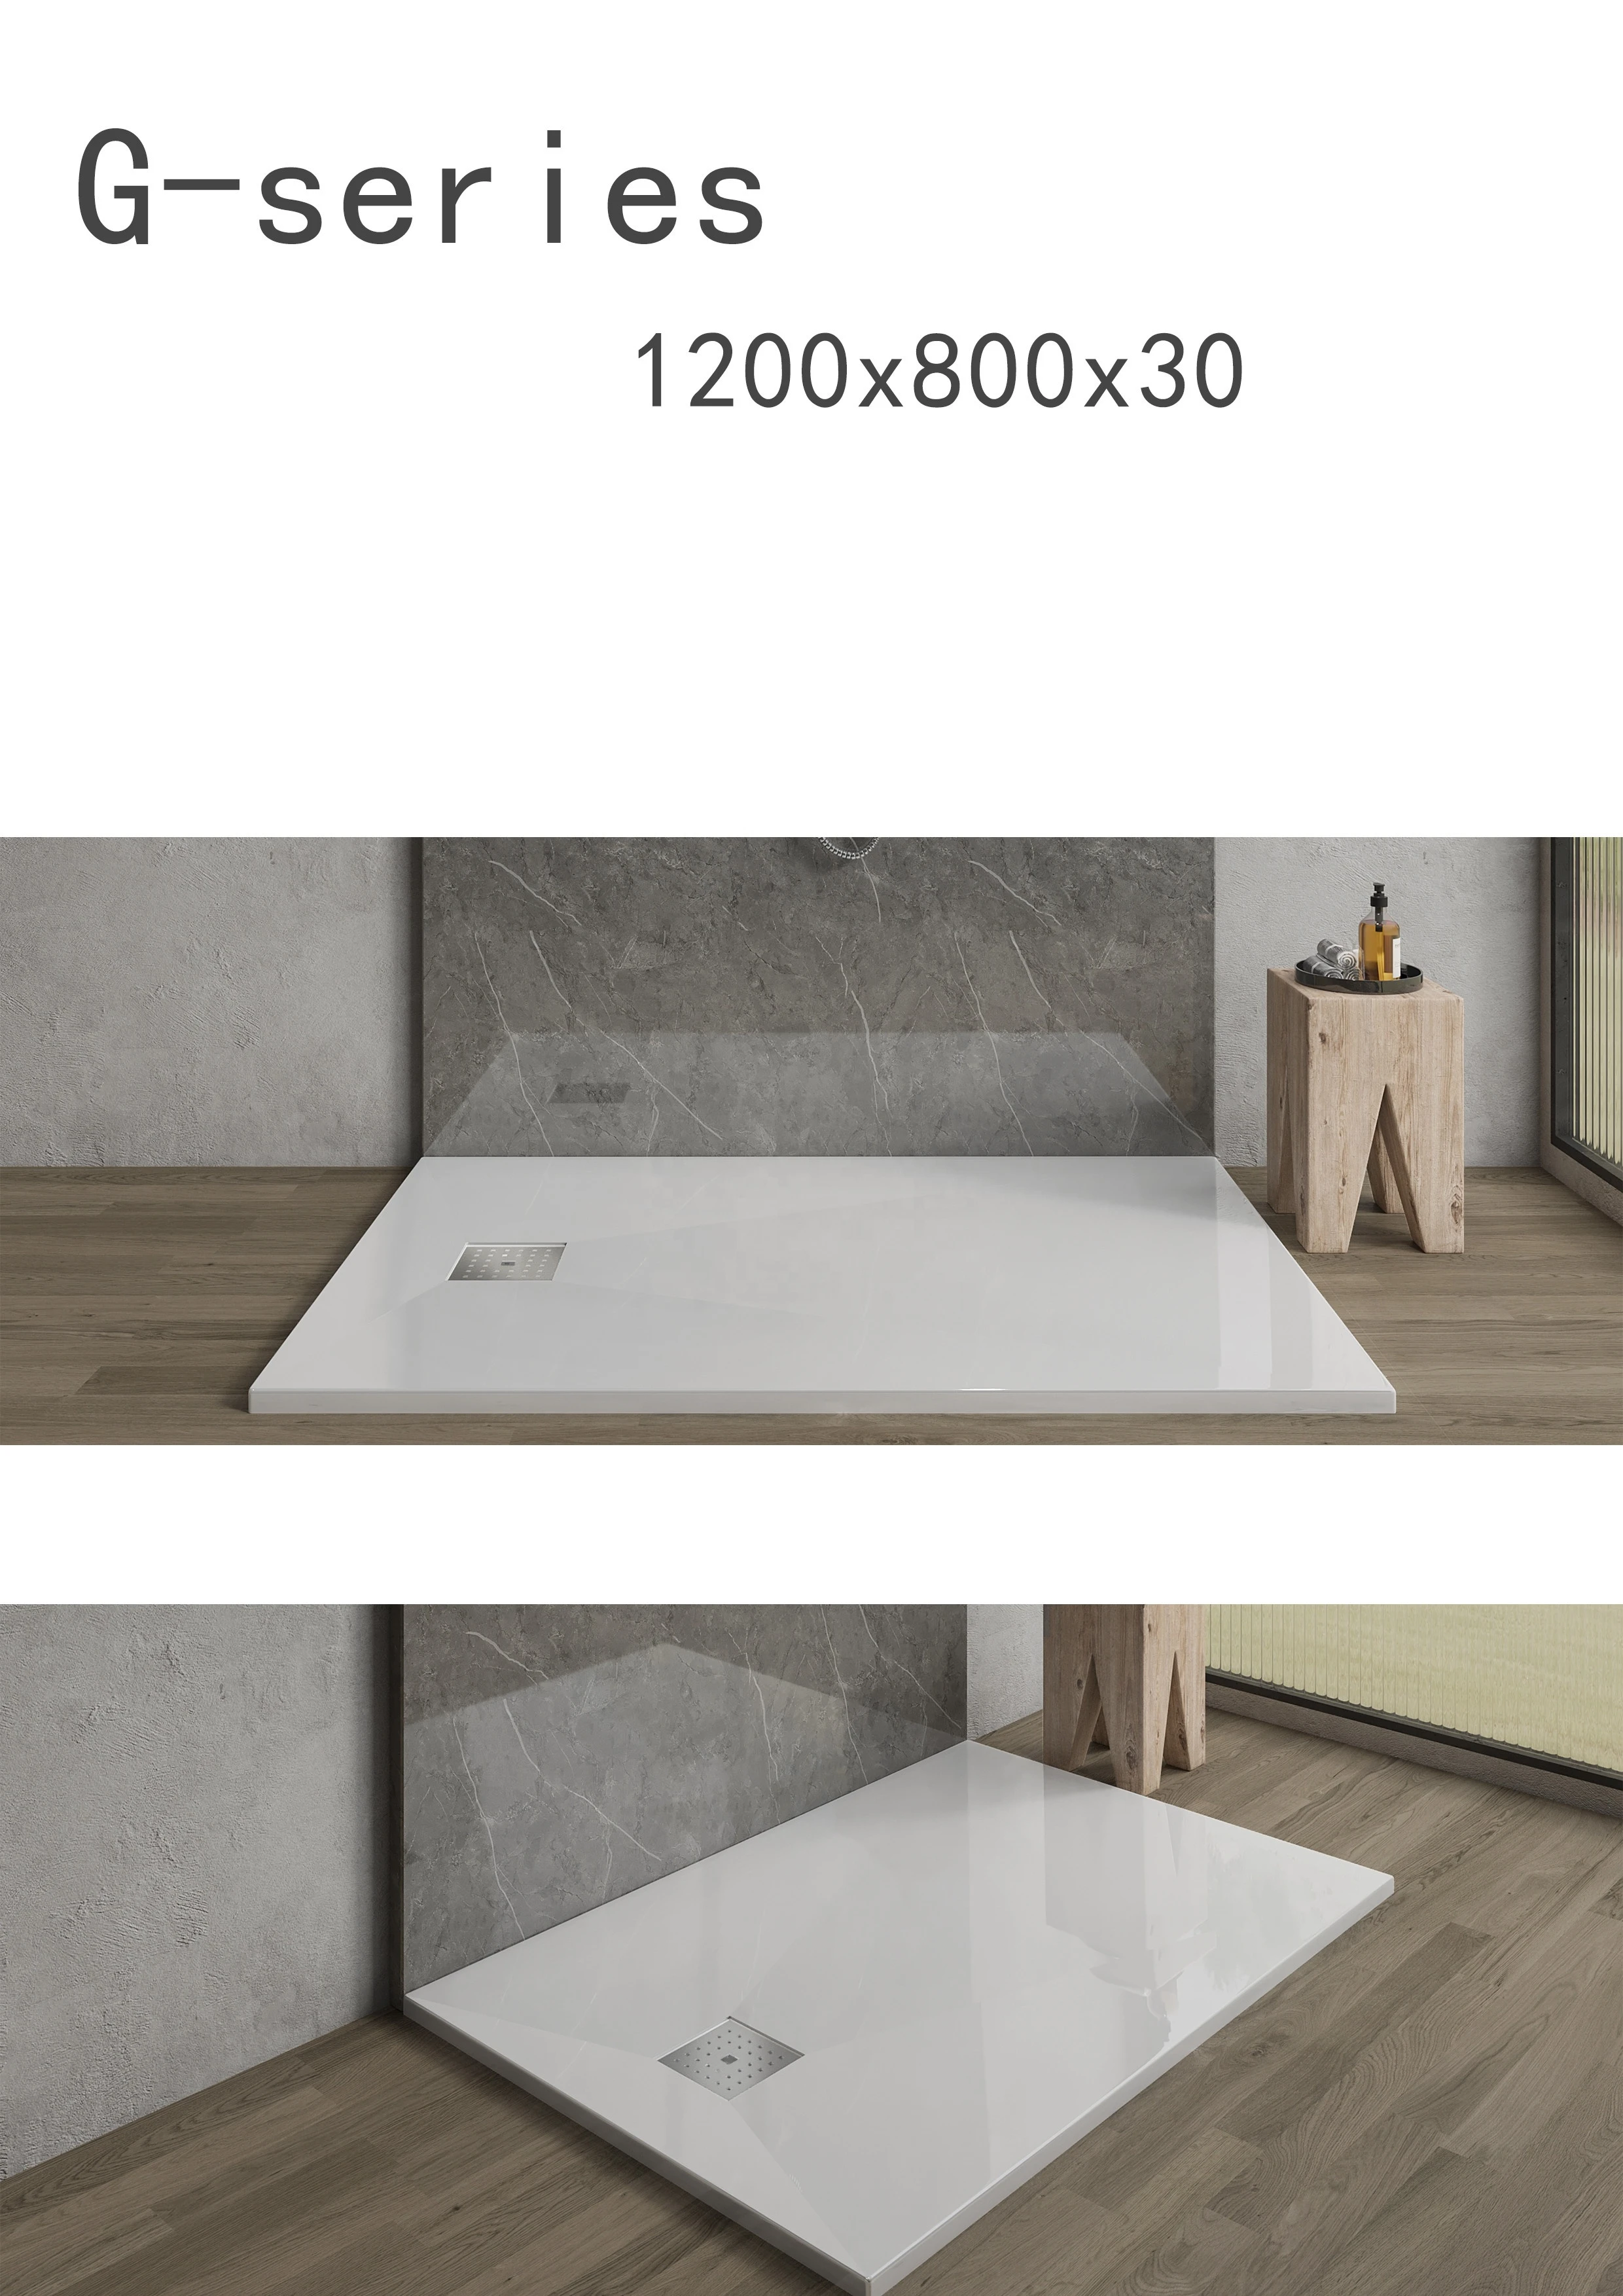 European bathroom marble resin stone texture waterproof shower pan tray